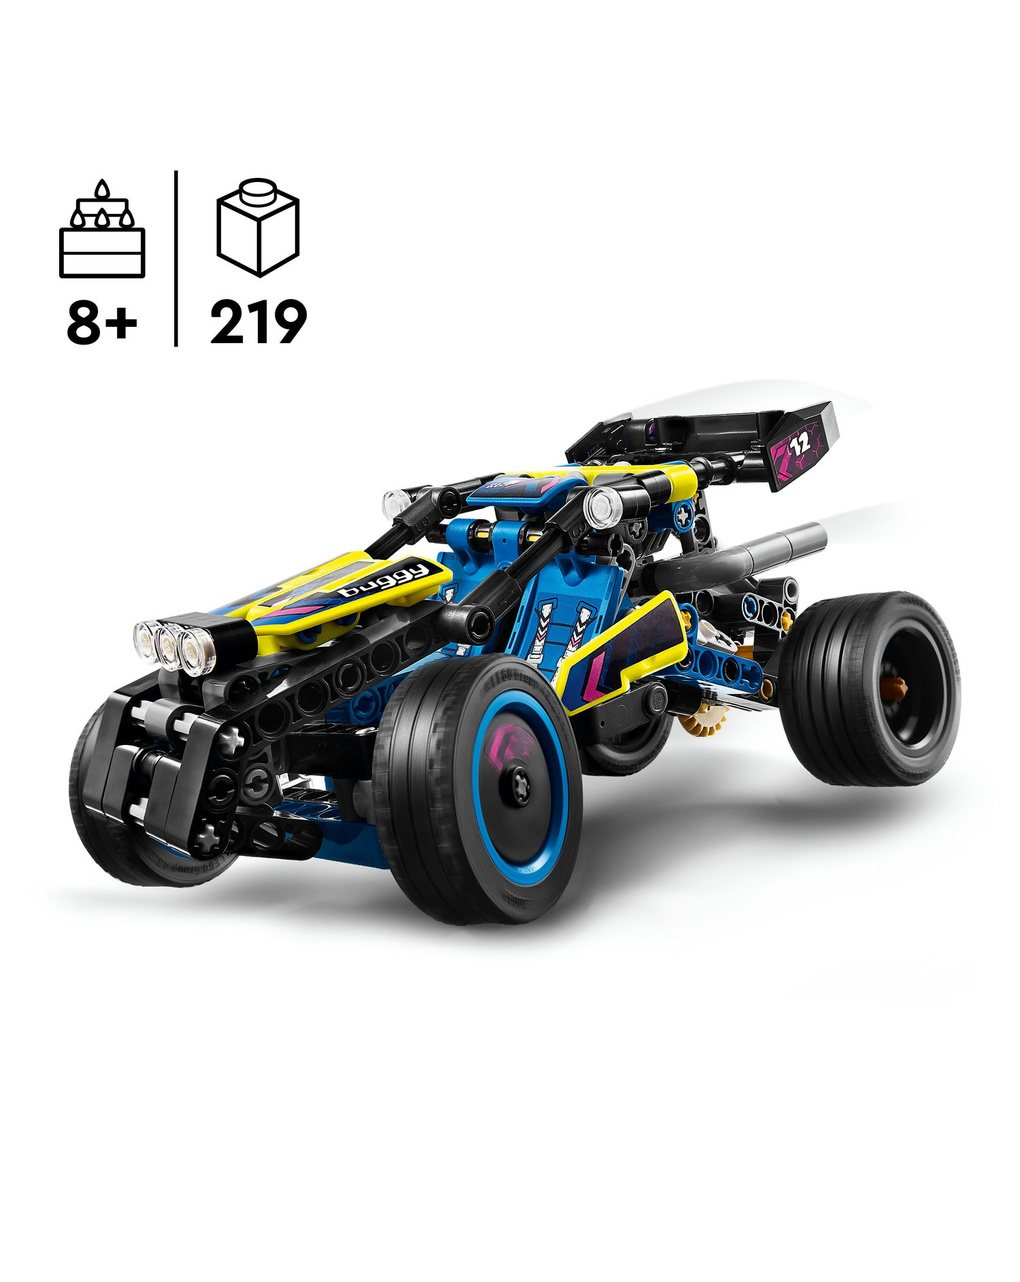 Buggy da corsa - 42614 - lego technic - LEGO